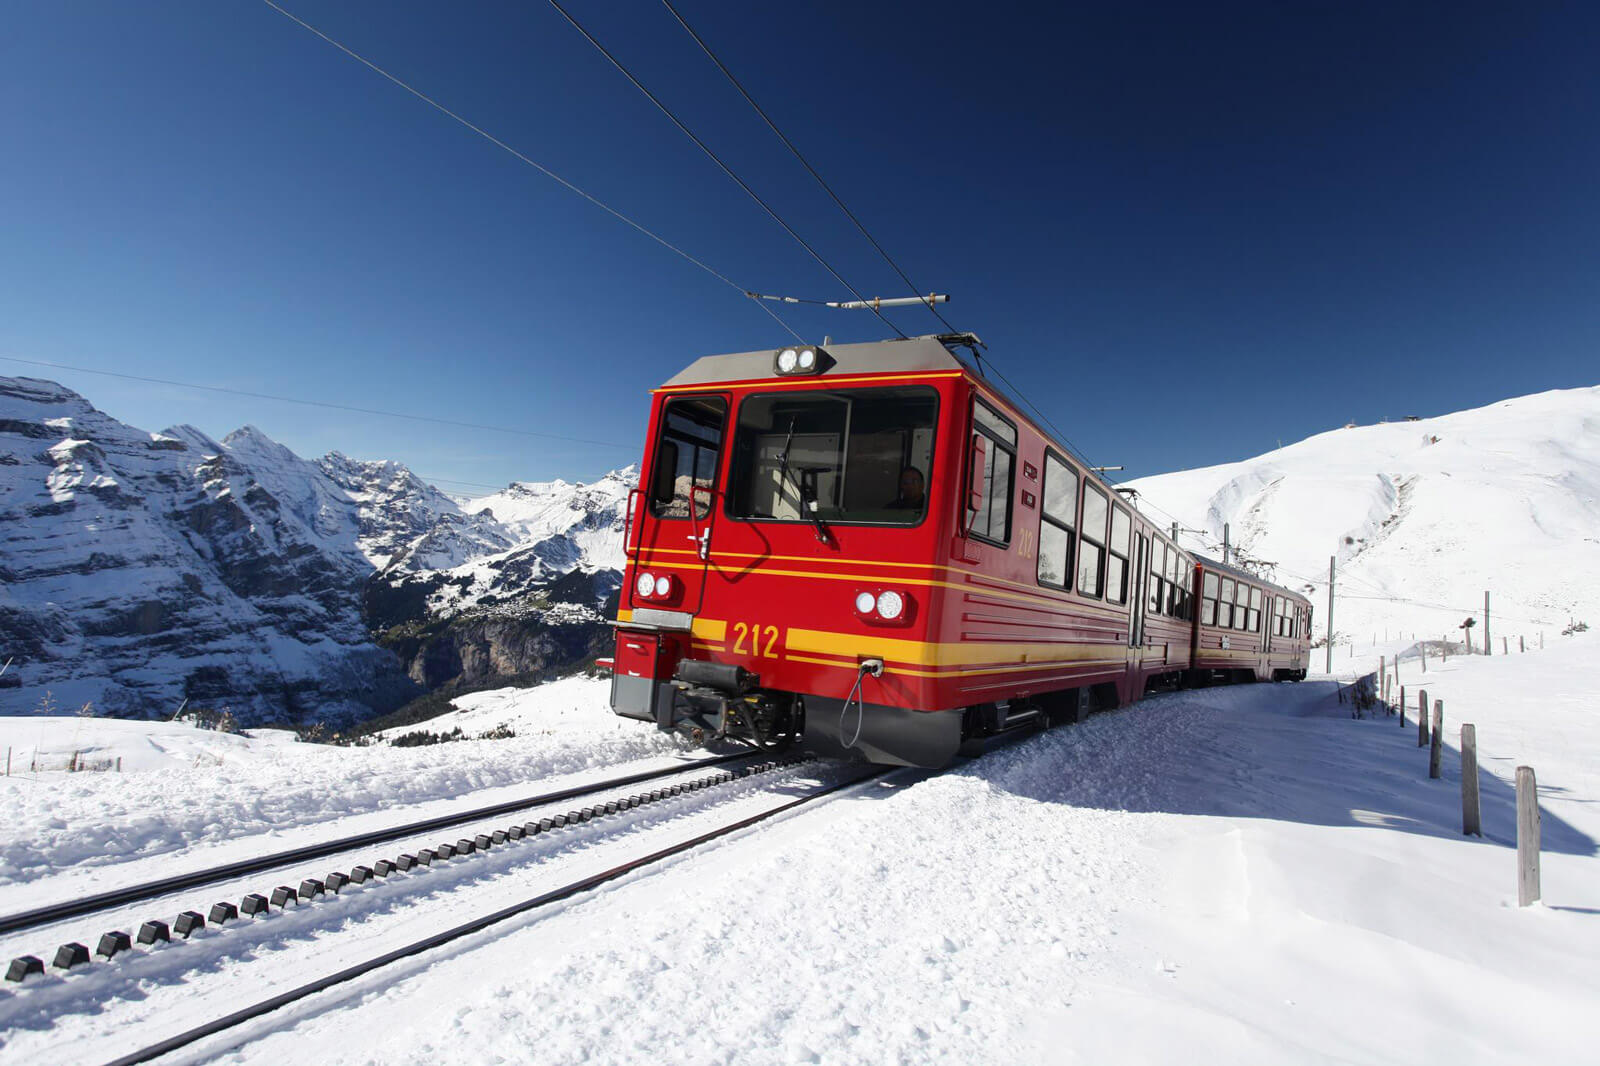 Jungfrau Bahn at Kleine Scheidegg